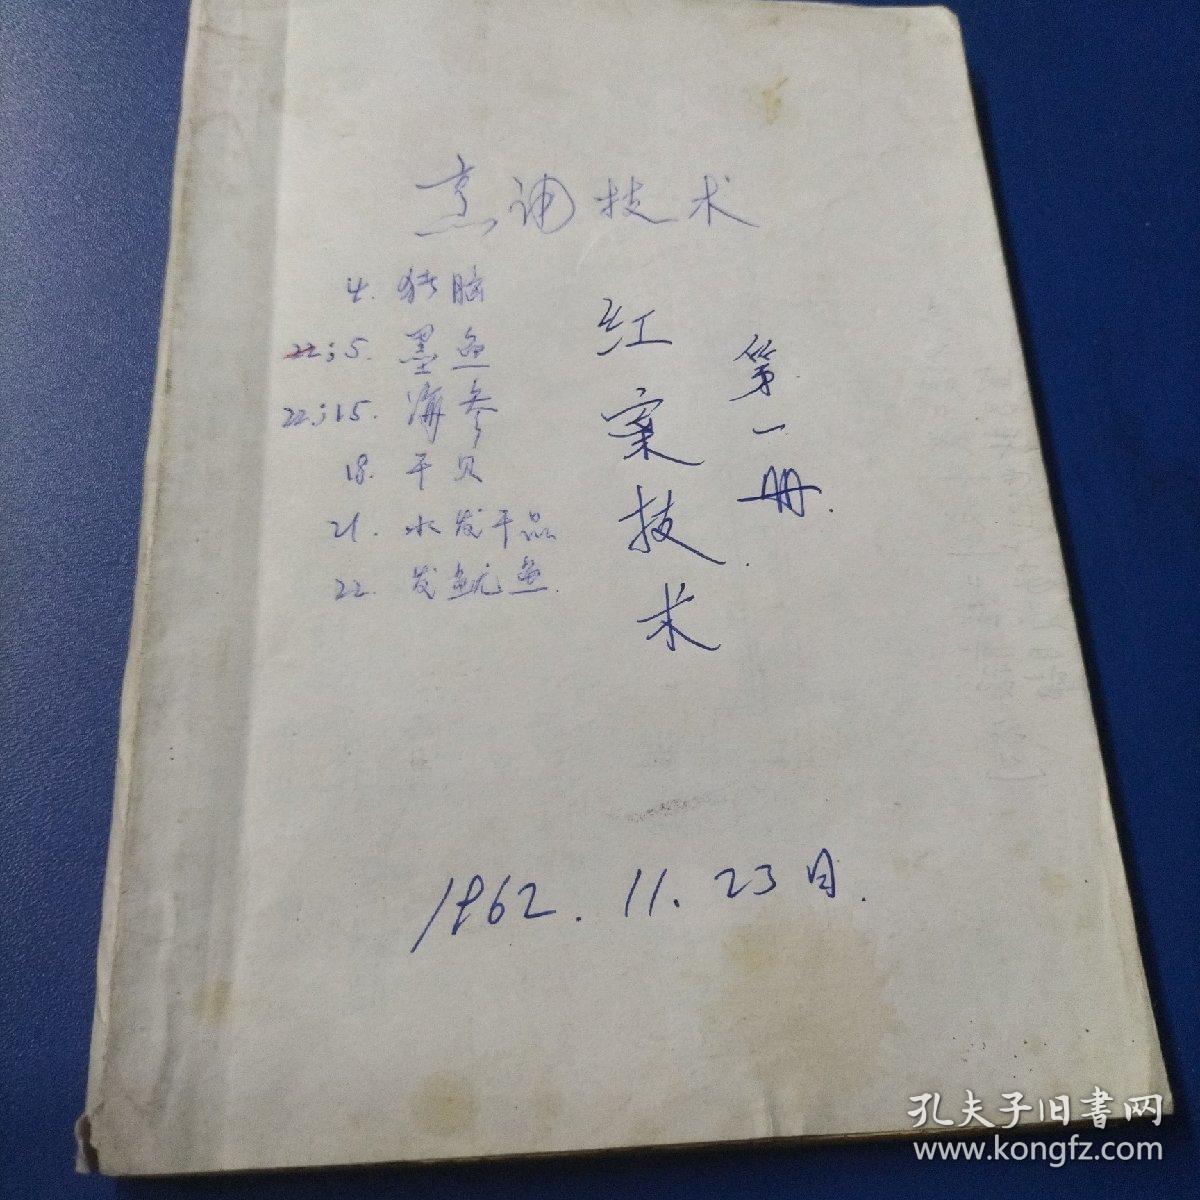 红案技术（第一册）1962年老式武汉汉江饮食教材，老版武汉饮食技术资料，武汉汉江老菜谱，汉江地区饮食烹饪烹调技术，